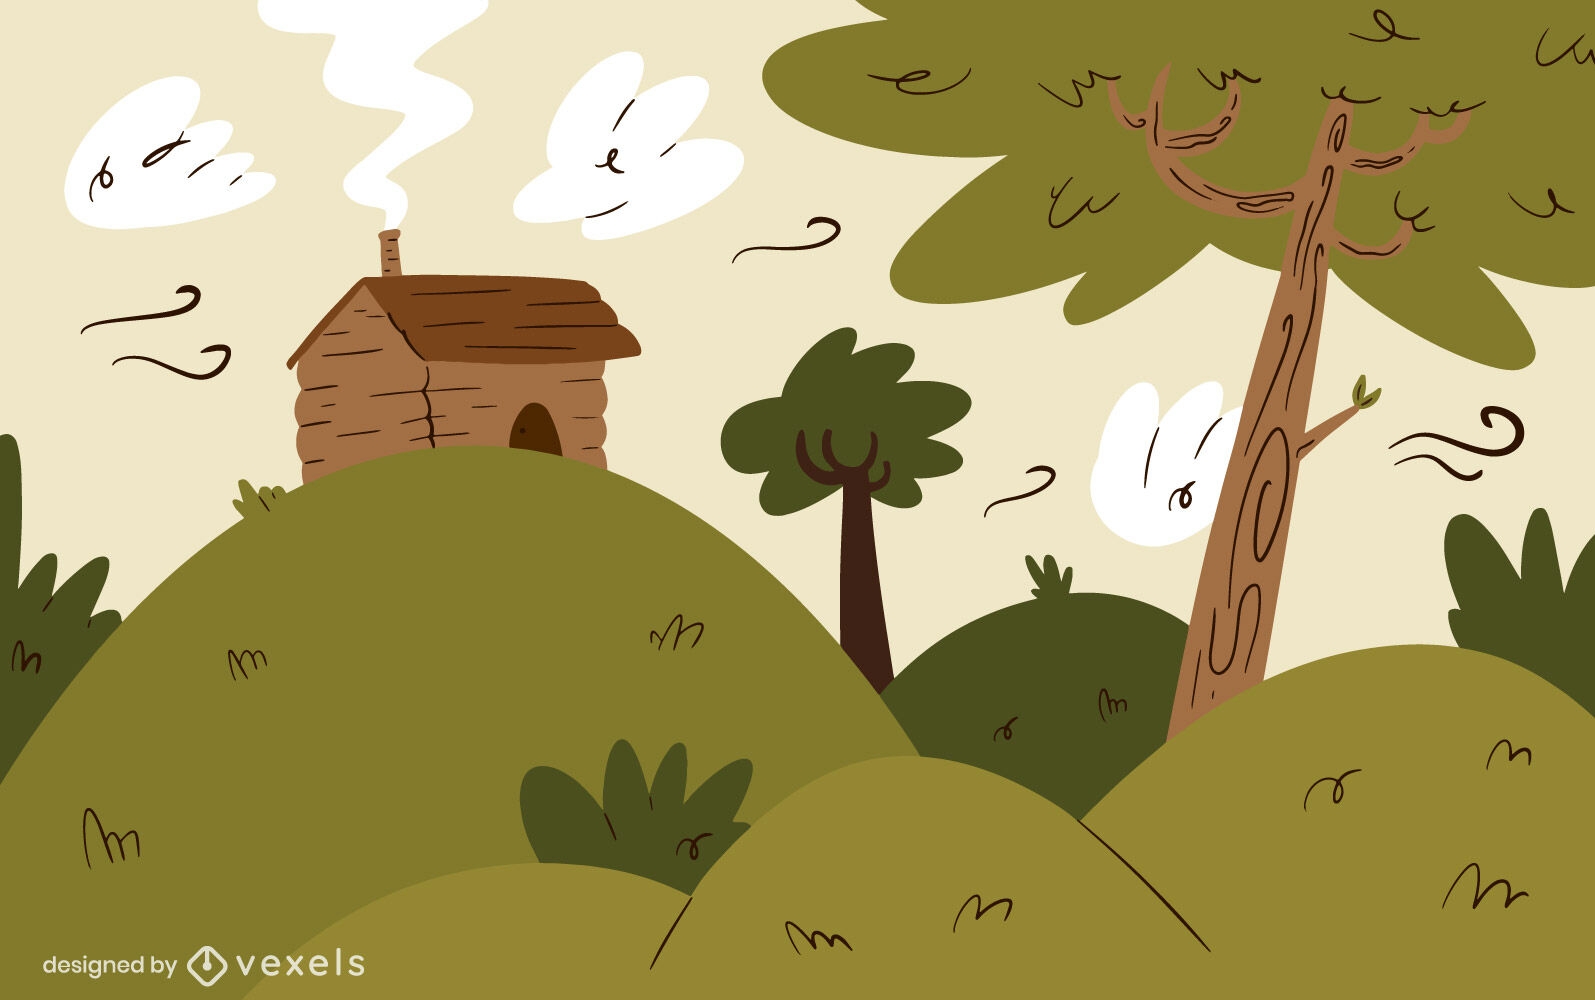 Forest cottage illustration design